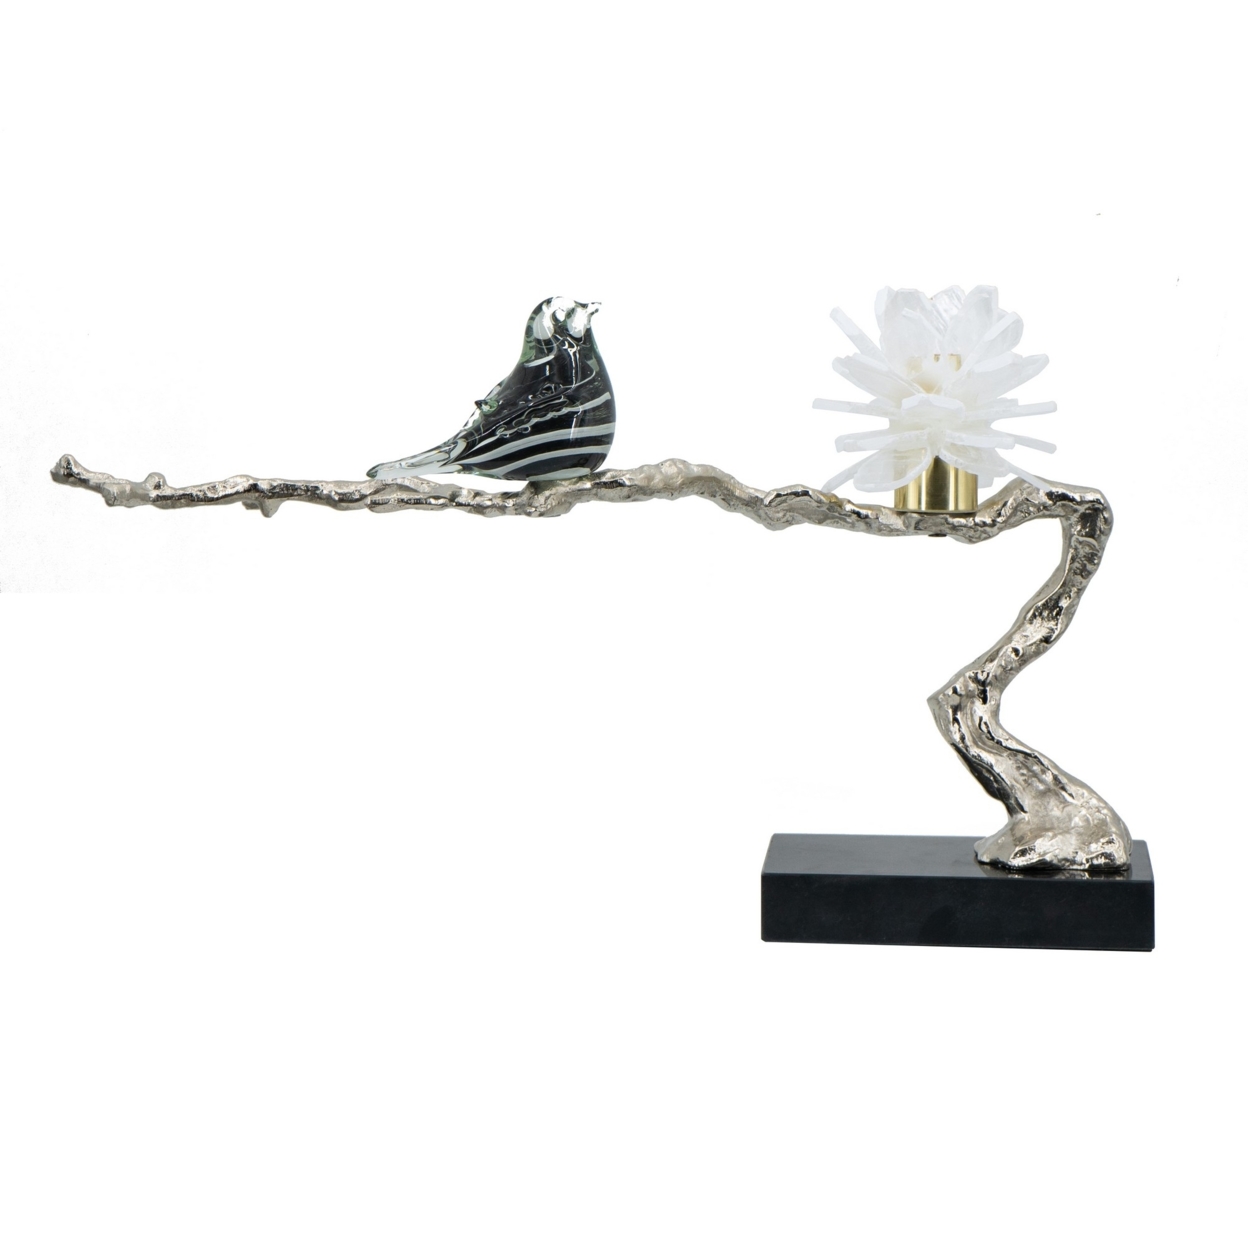 Sue 25 Inch Accent Decor Sculpture, Branch, Flower, And Bird, Silver, Black- Saltoro Sherpi